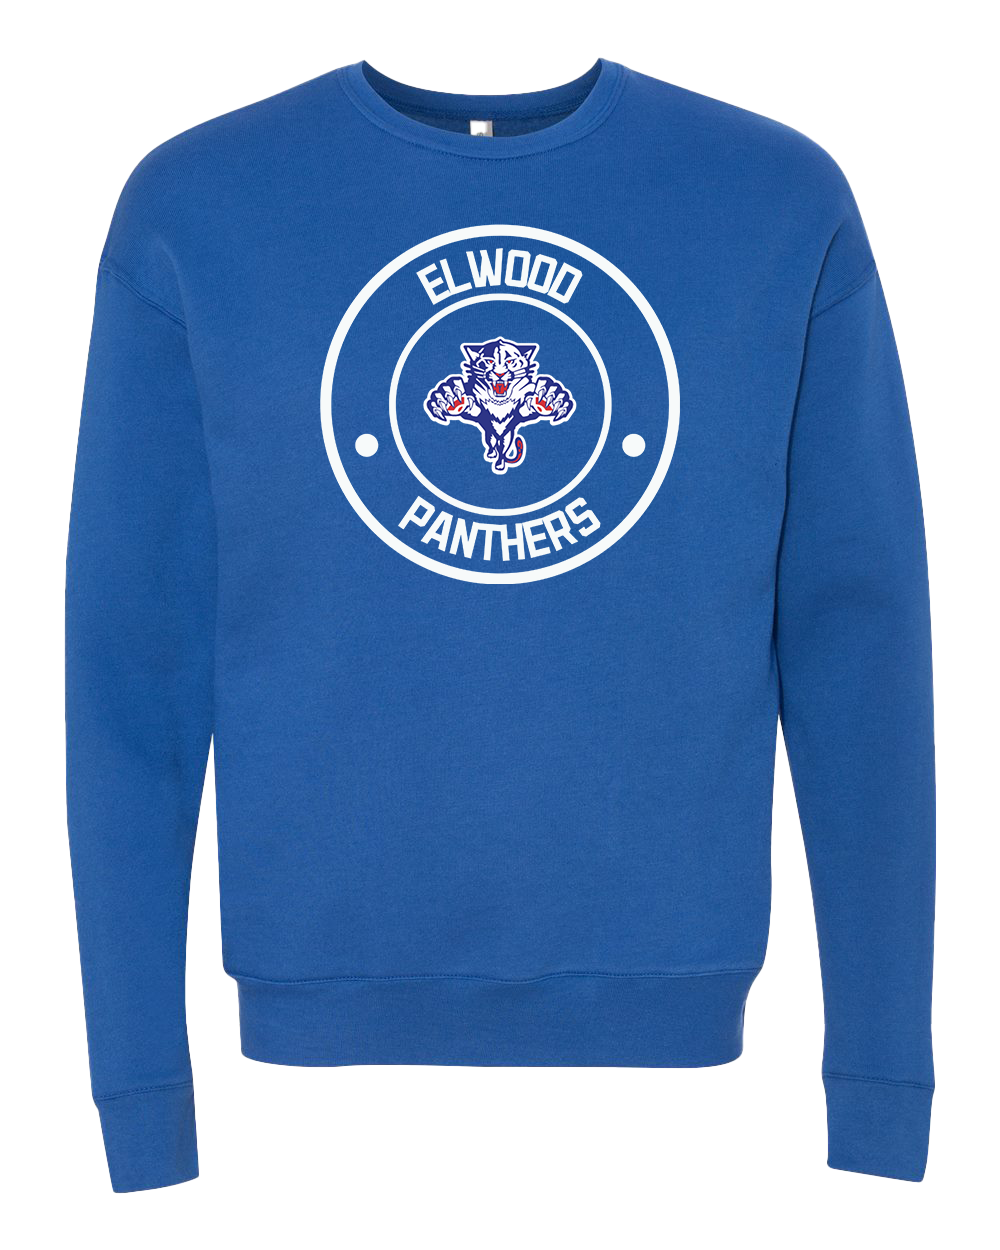 Elwood Panthers Round Crew Sweatshirt - Royal Blue